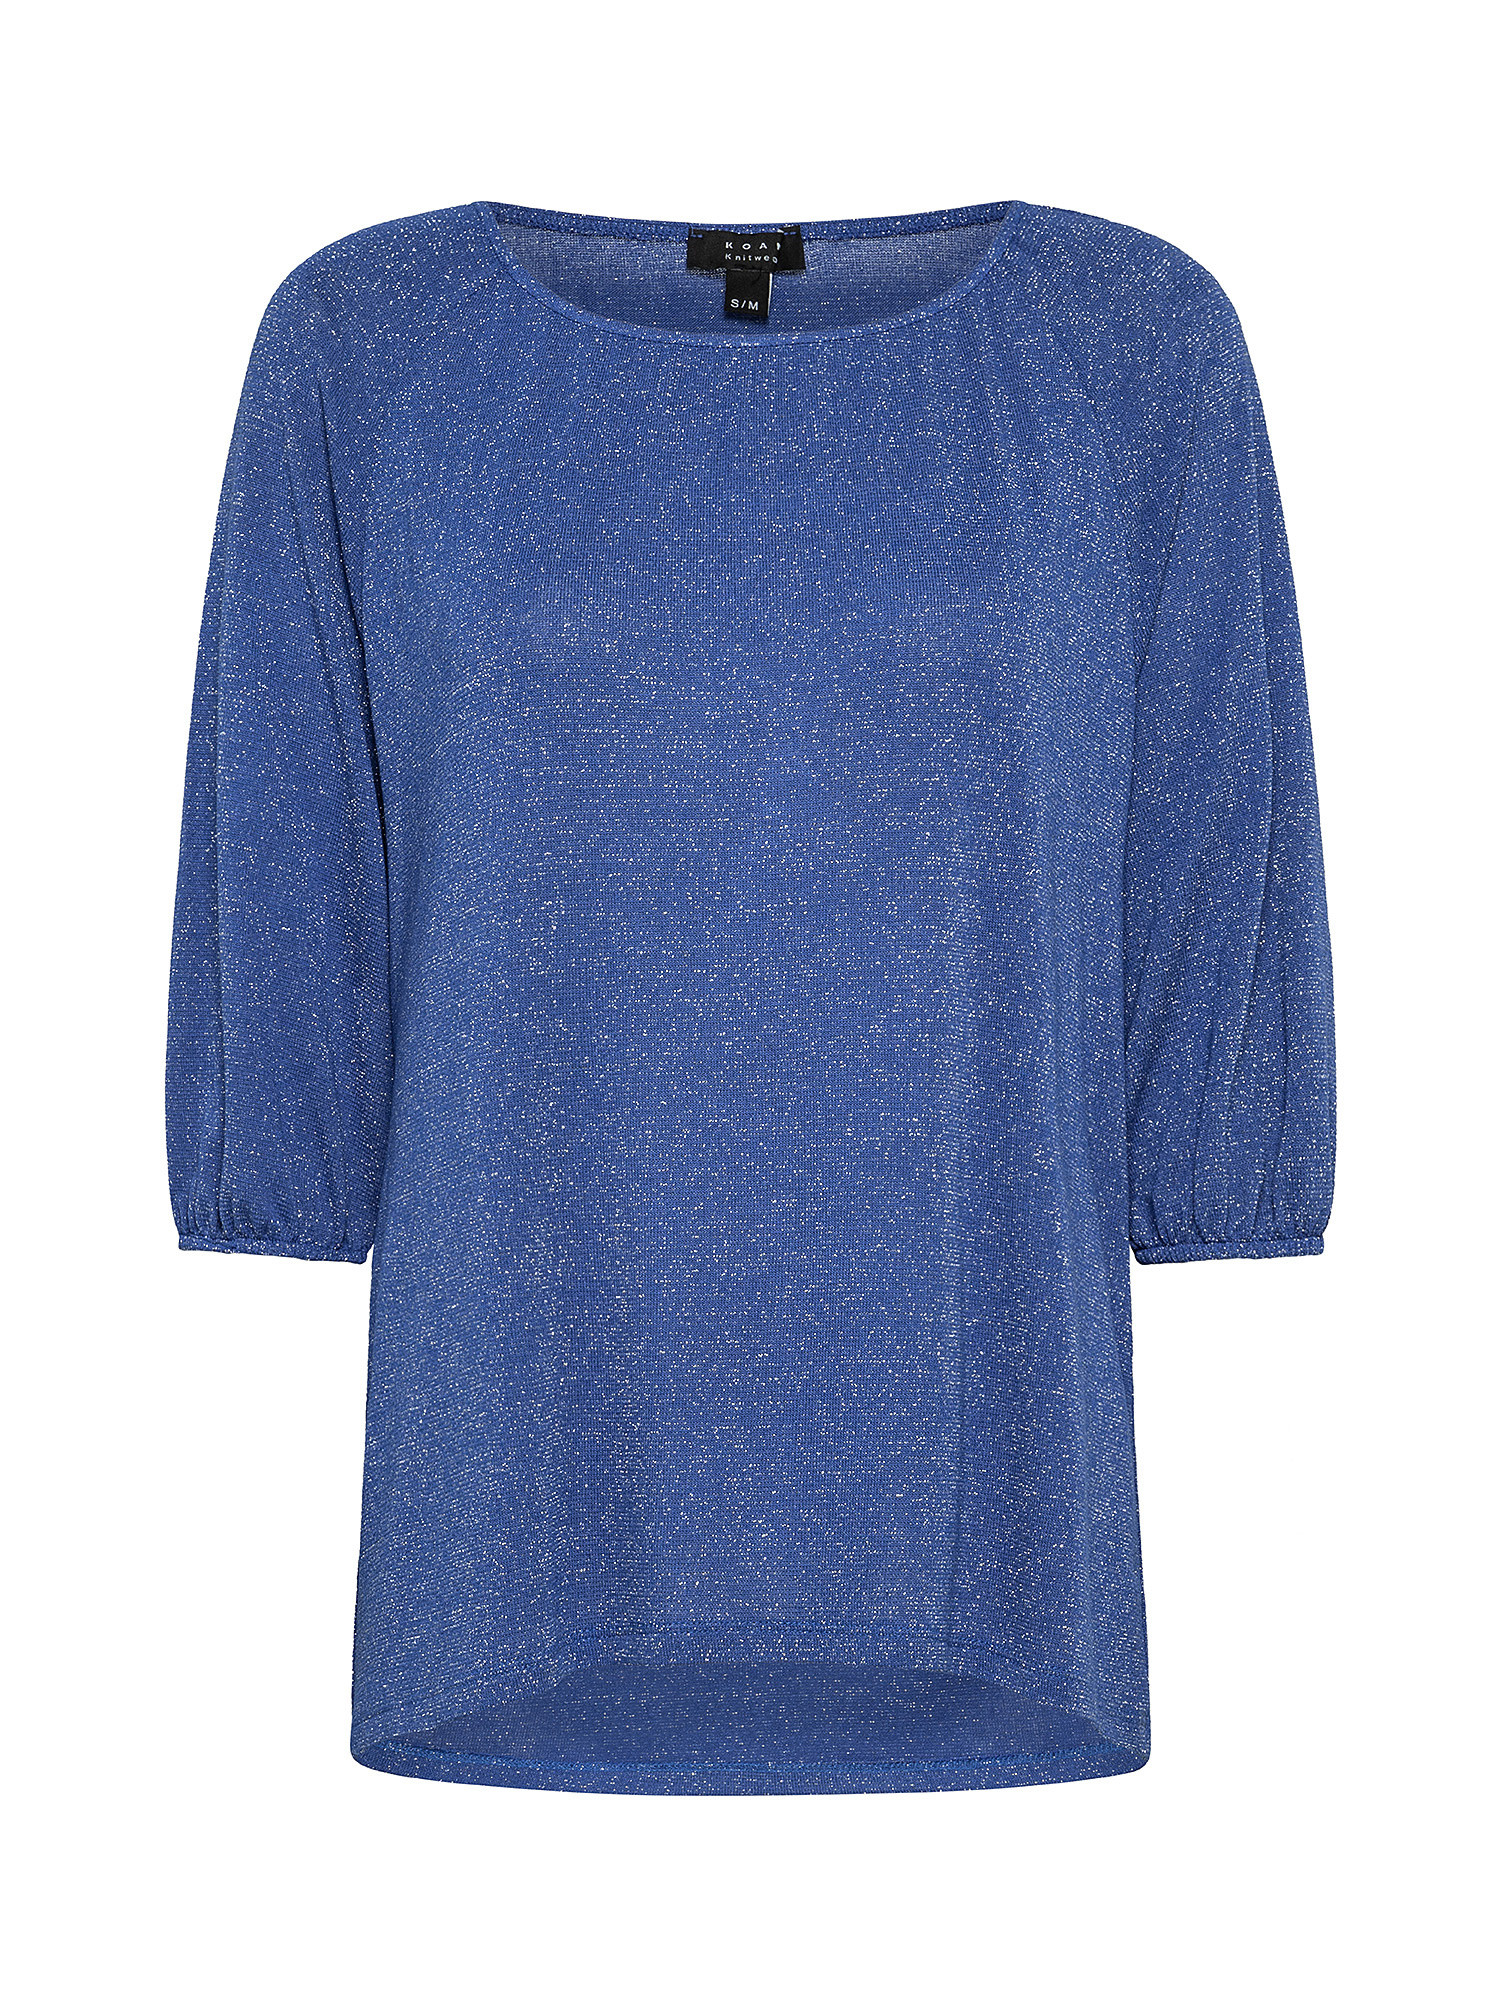 T-shirt con manica raglan, Blu royal, large image number 0